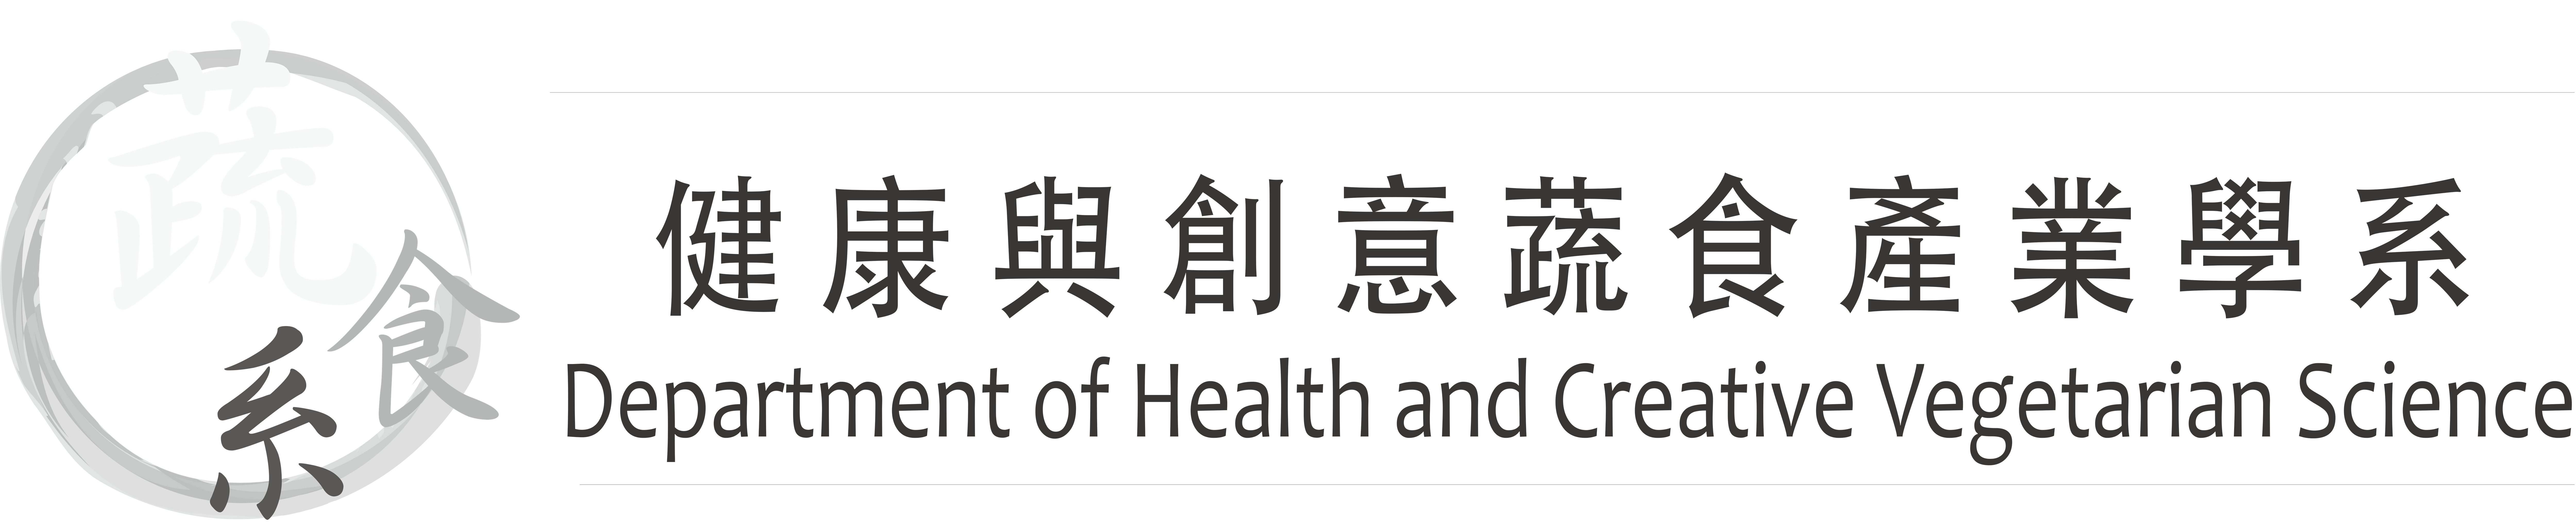 佛光大學 健康與創意蔬食產業學系的Logo